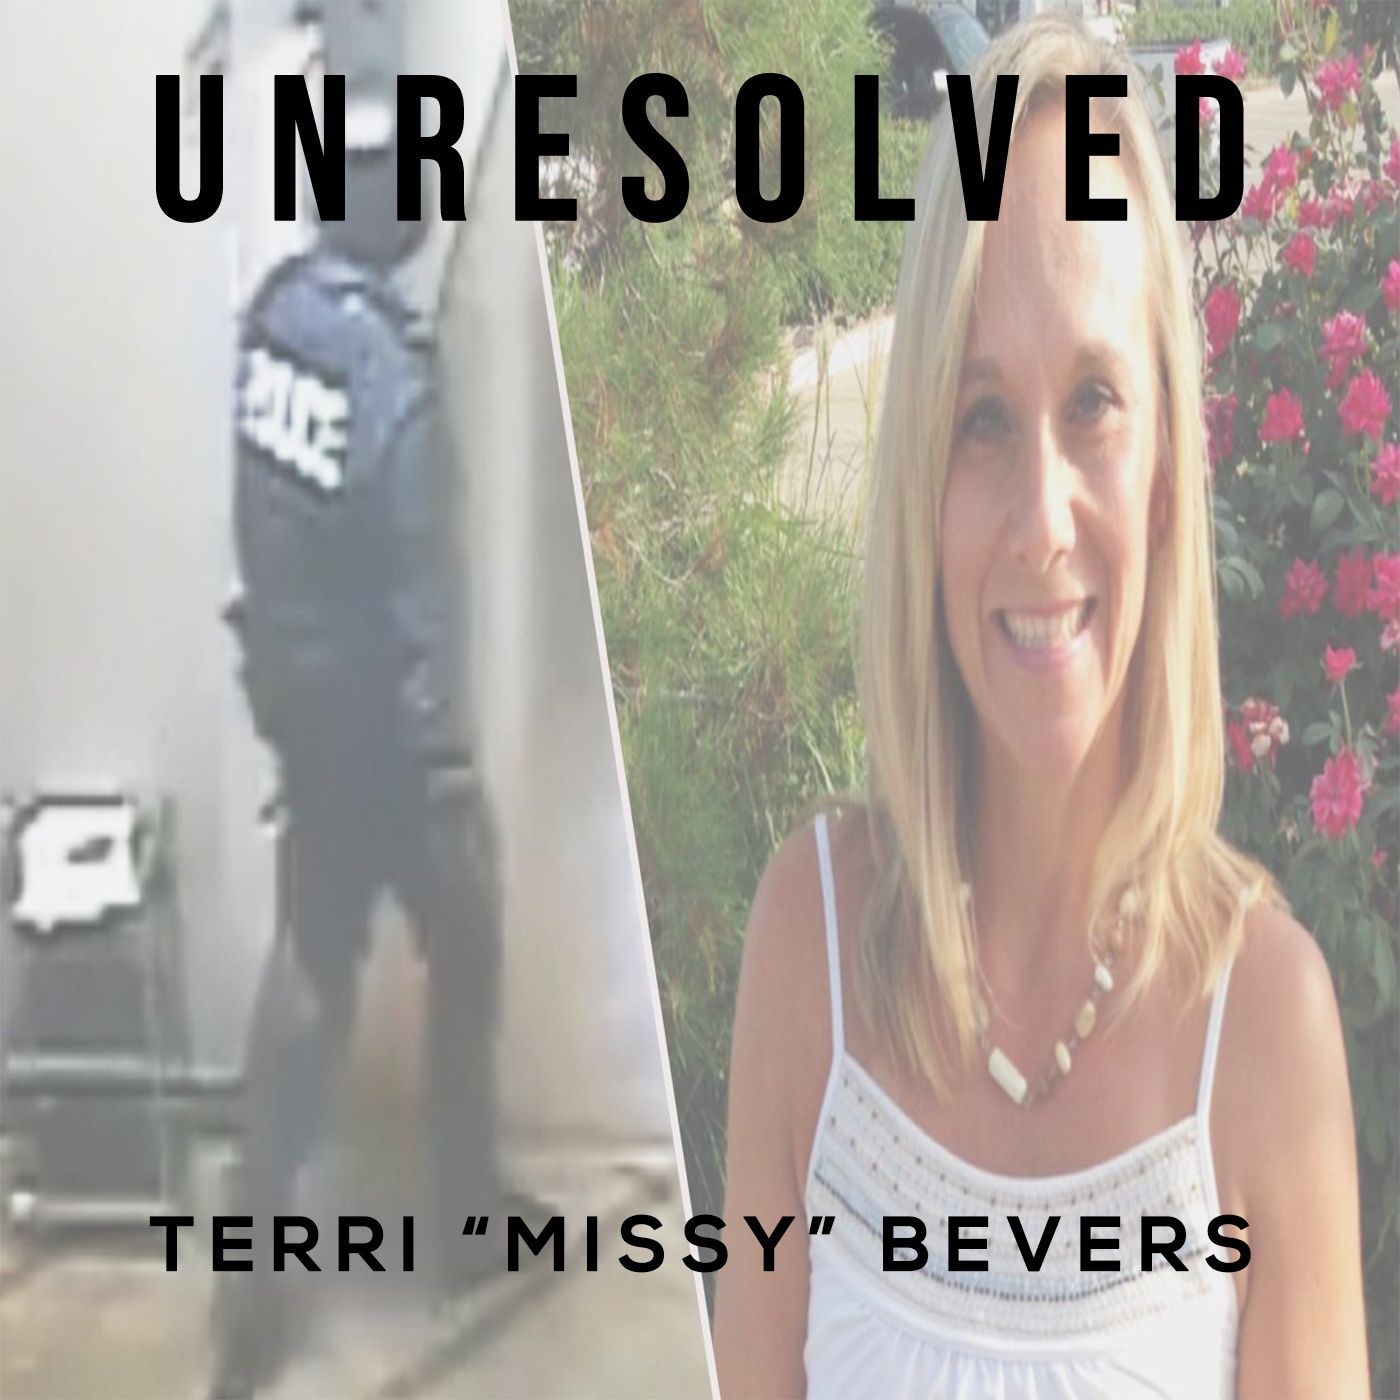 Terri 'Missy' Bevers